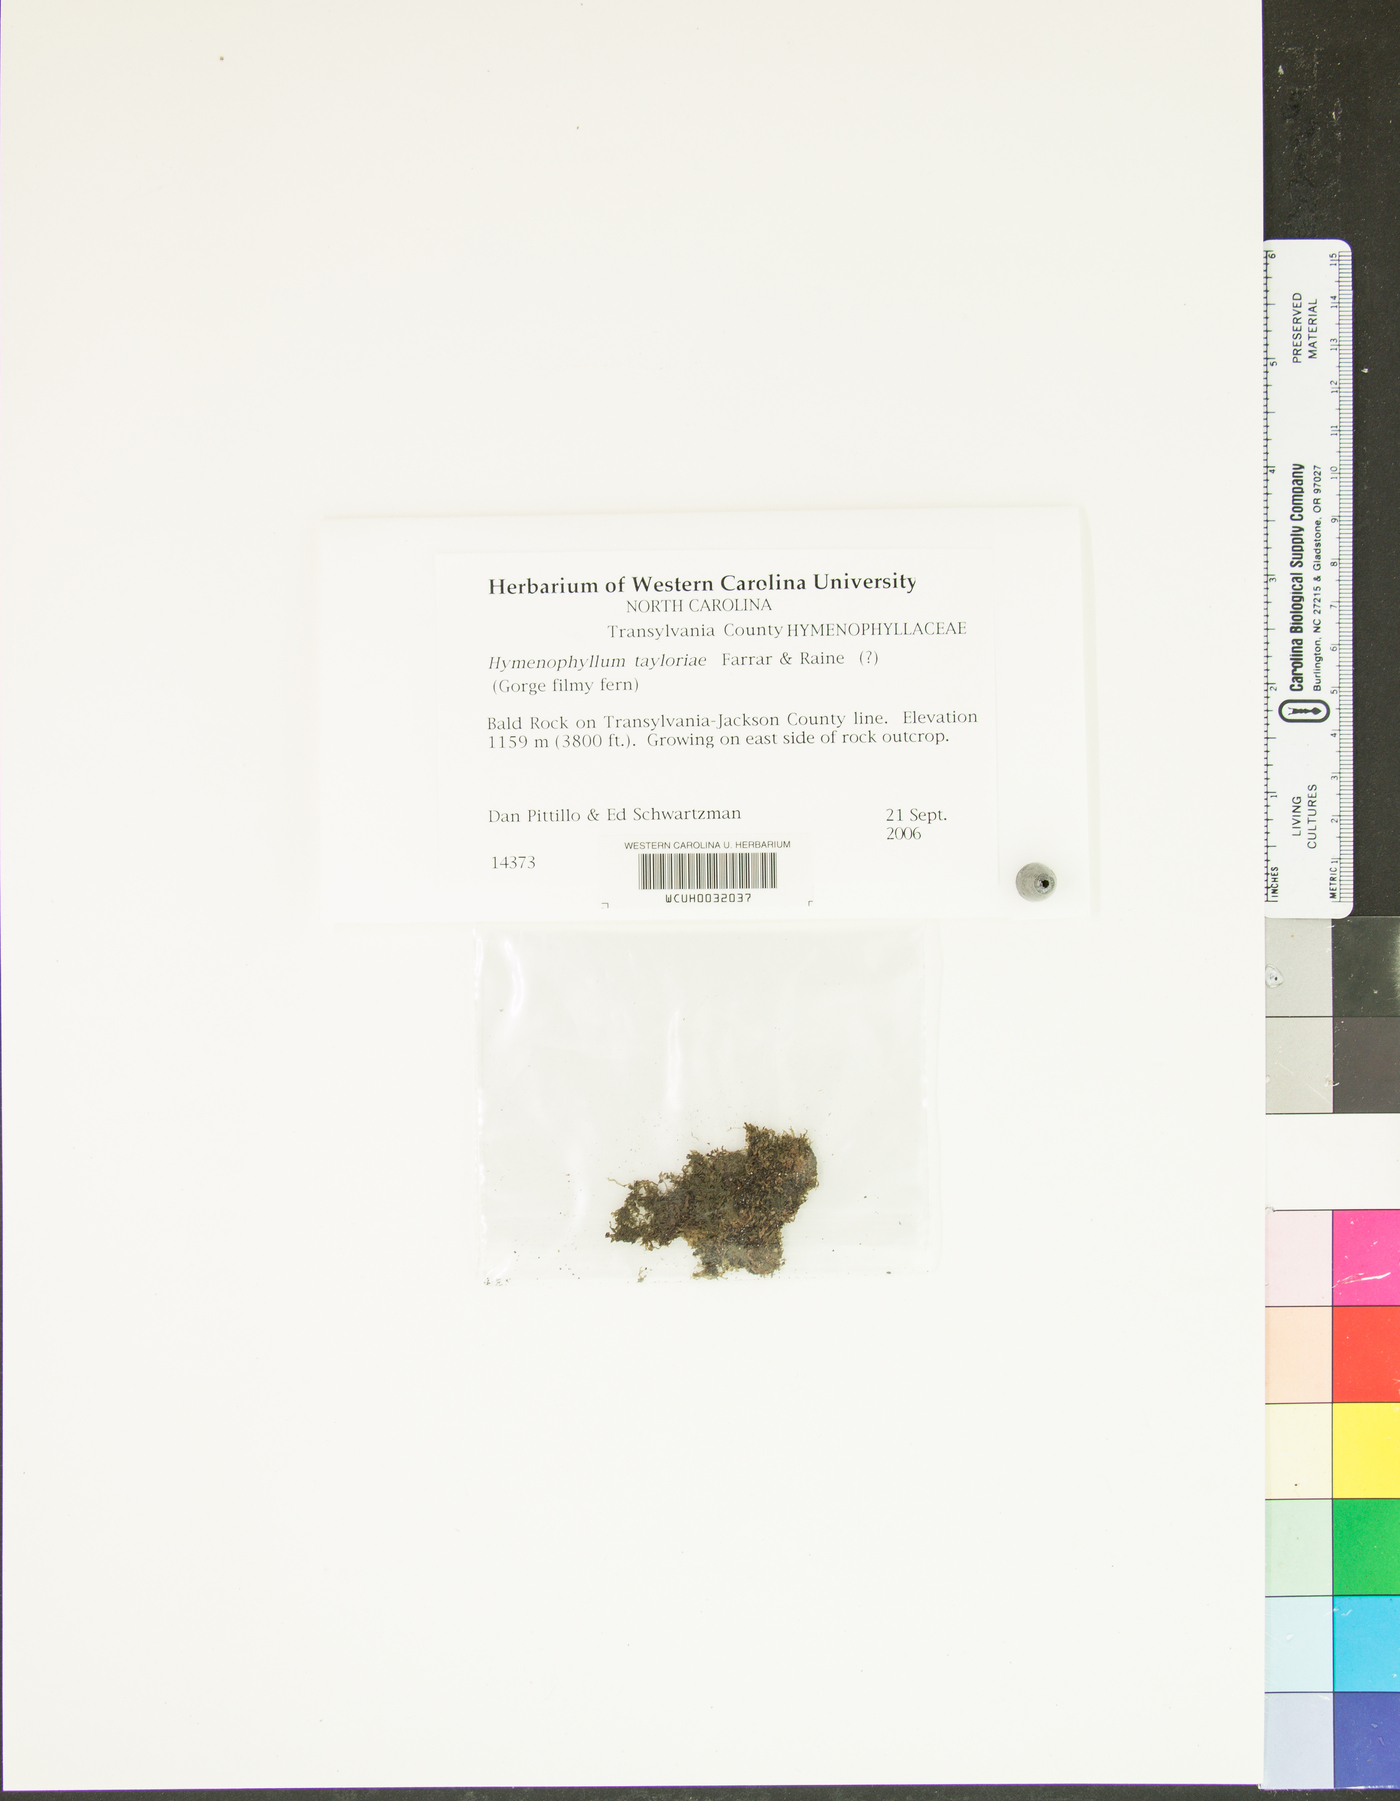 Hymenophyllum tayloriae image